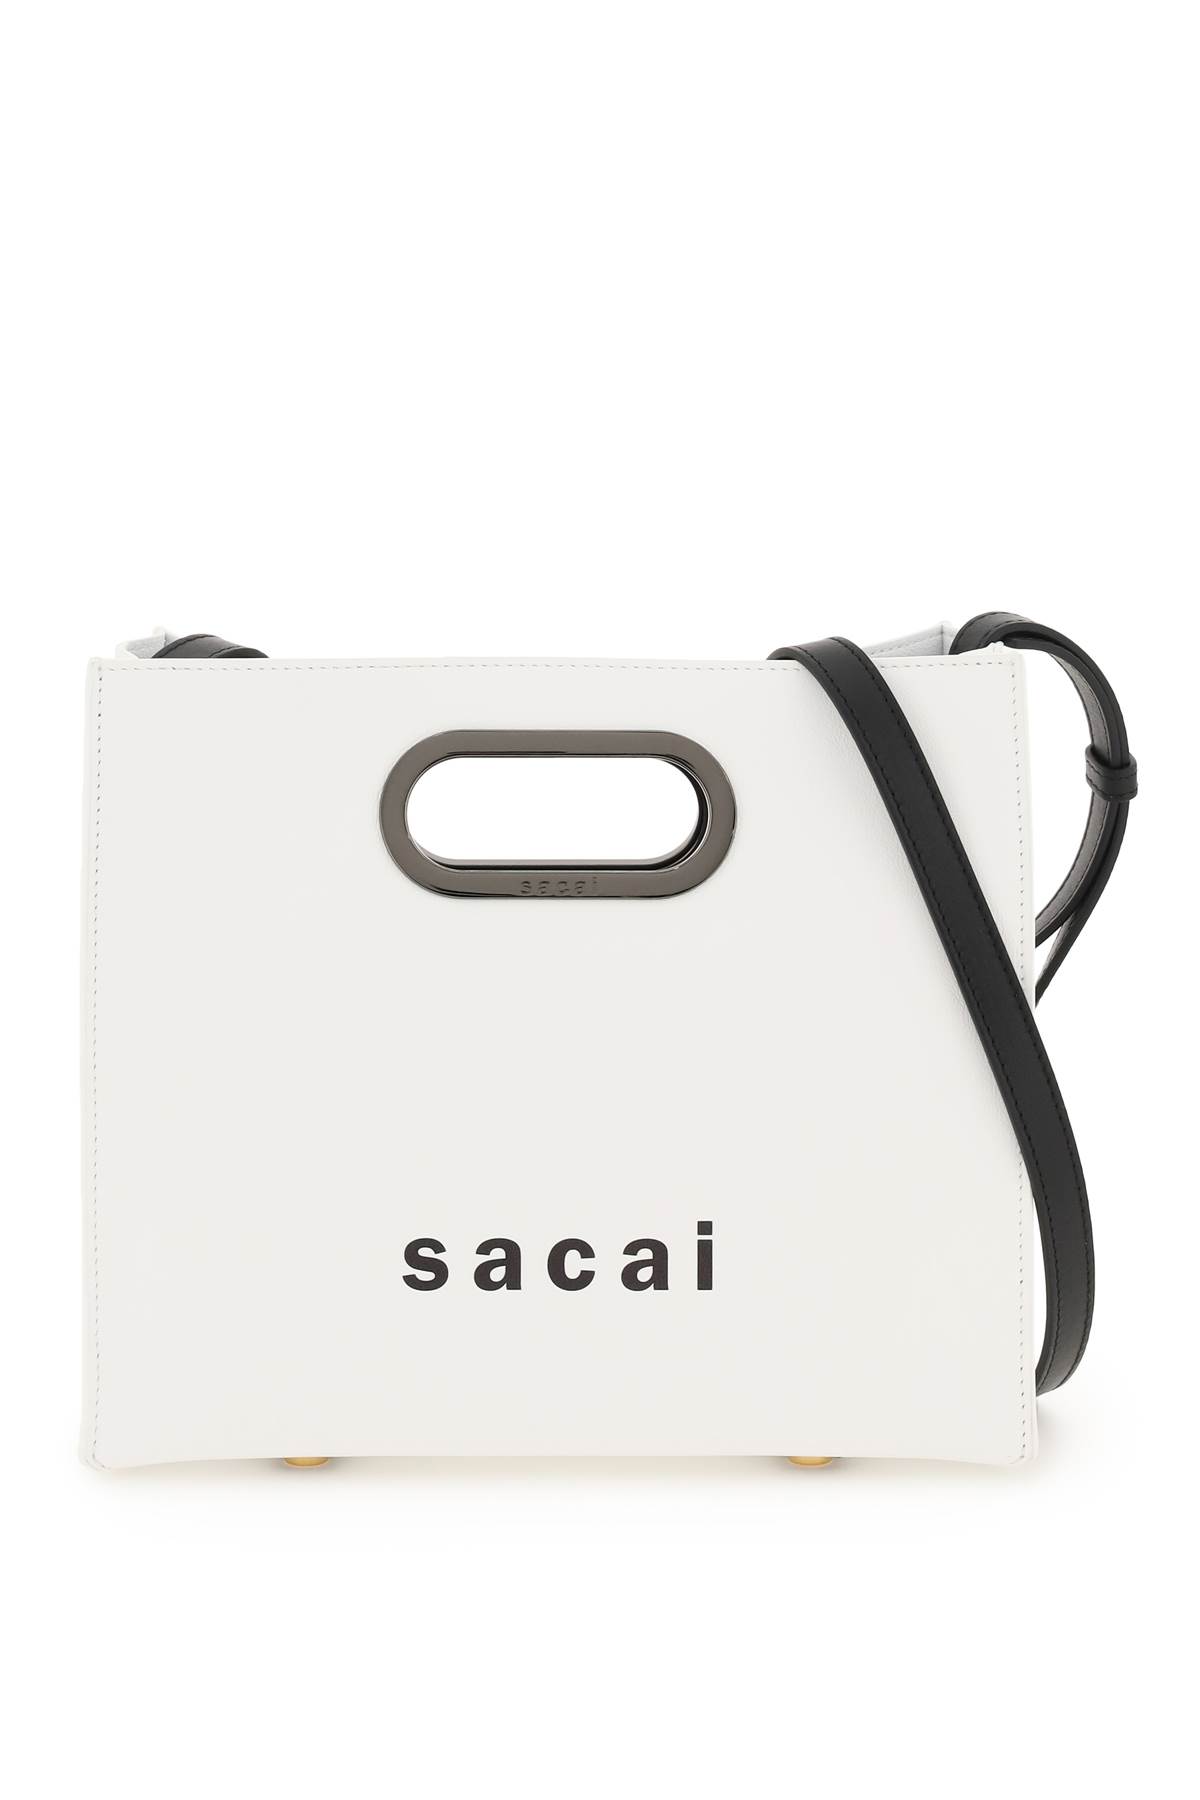 SACAI Bags for Women | ModeSens